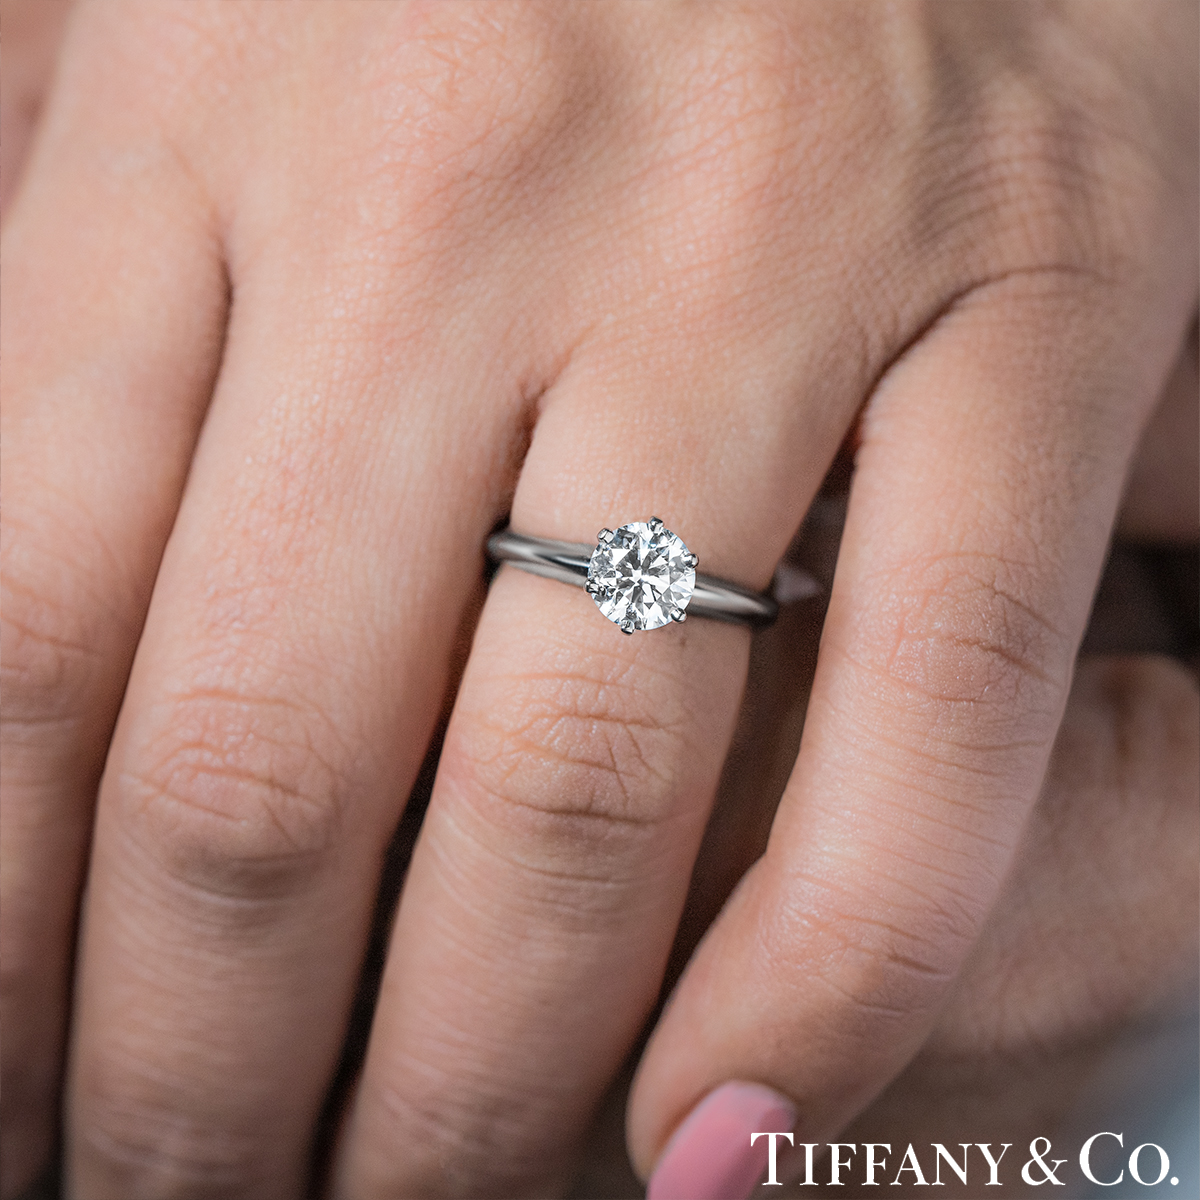 Tiffany & Co. Platinum Round Brilliant Cut Diamond Setting Ring 1.01ct E/VS1